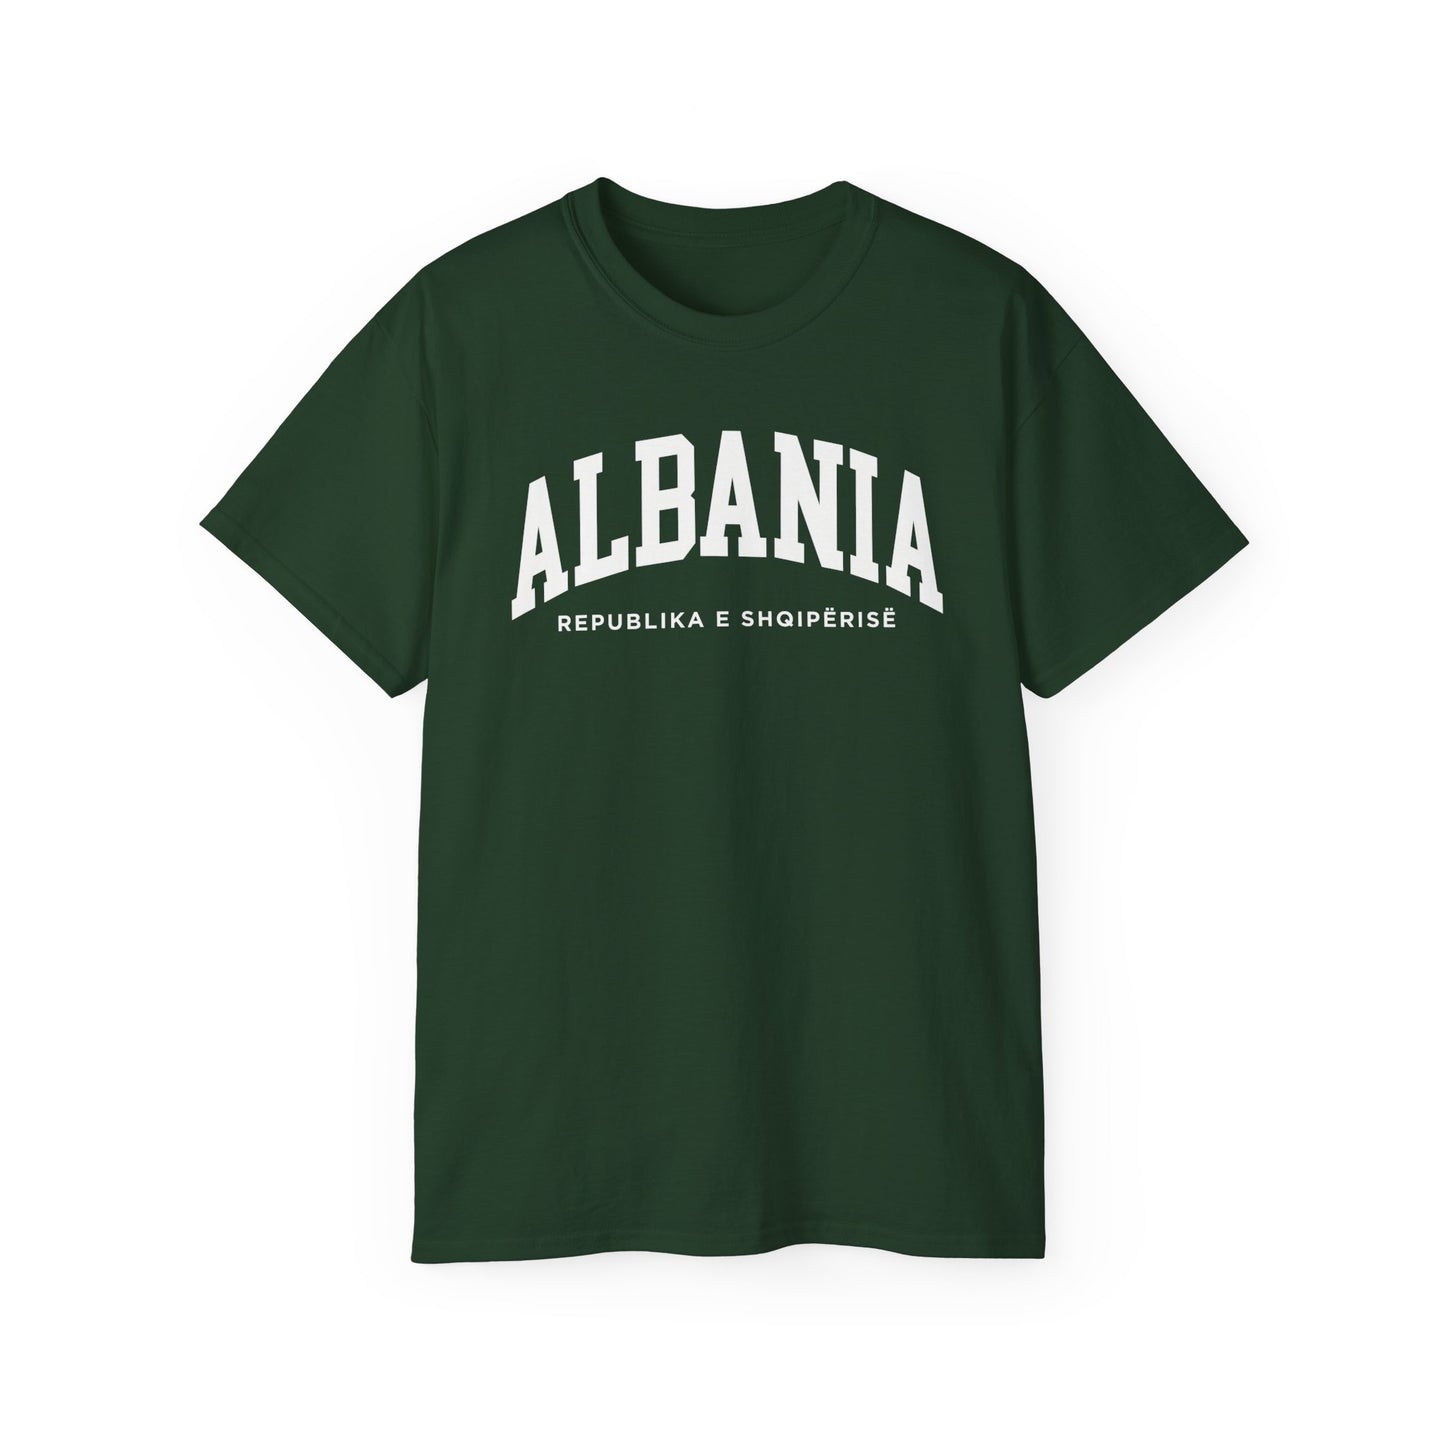 Albania Tee